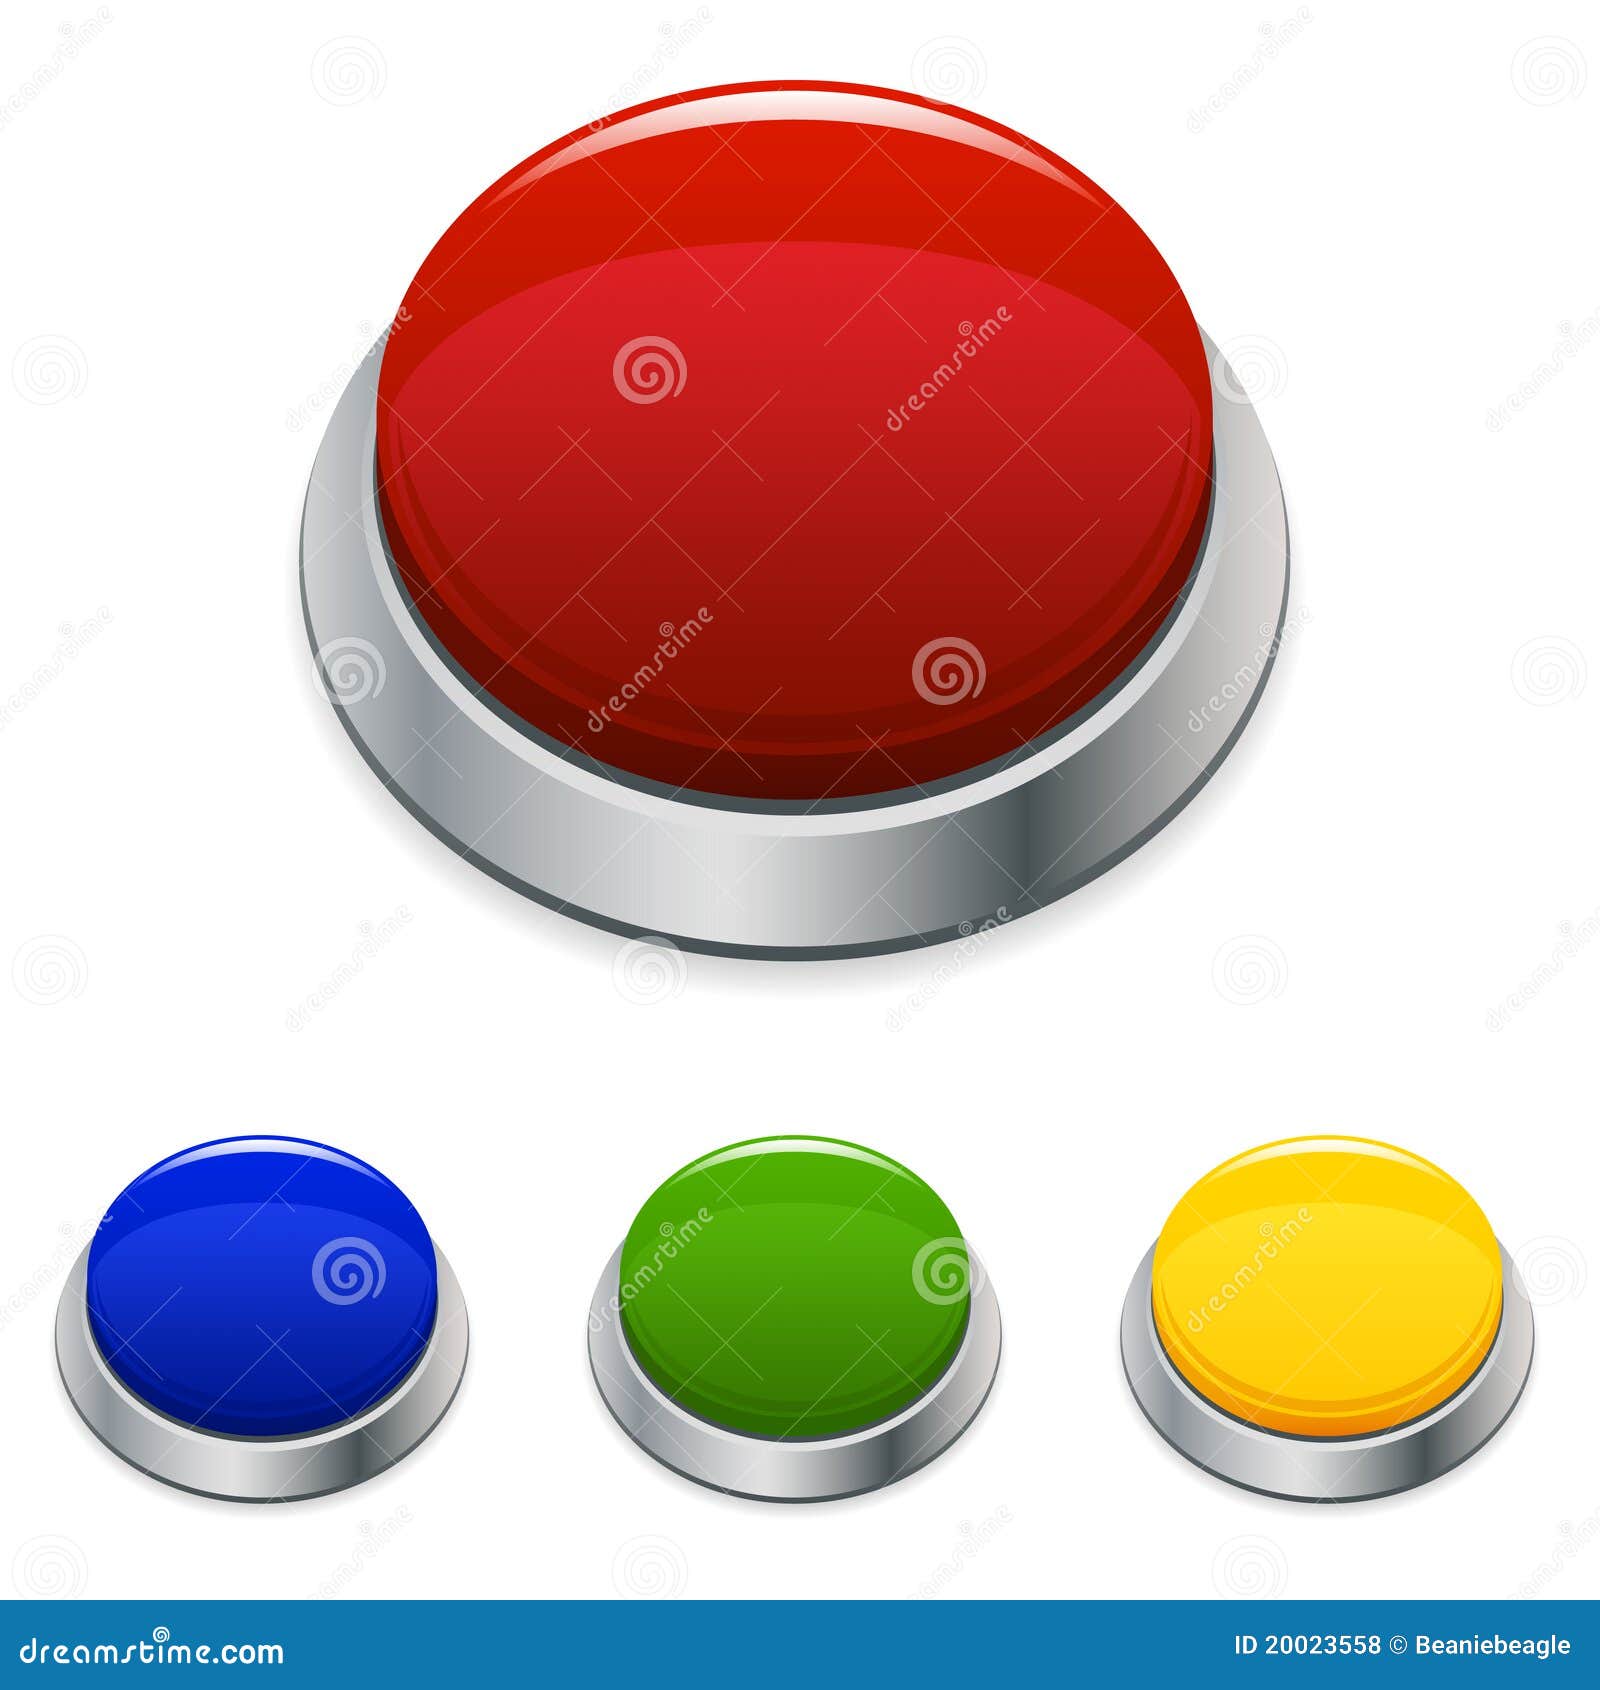 big button icon